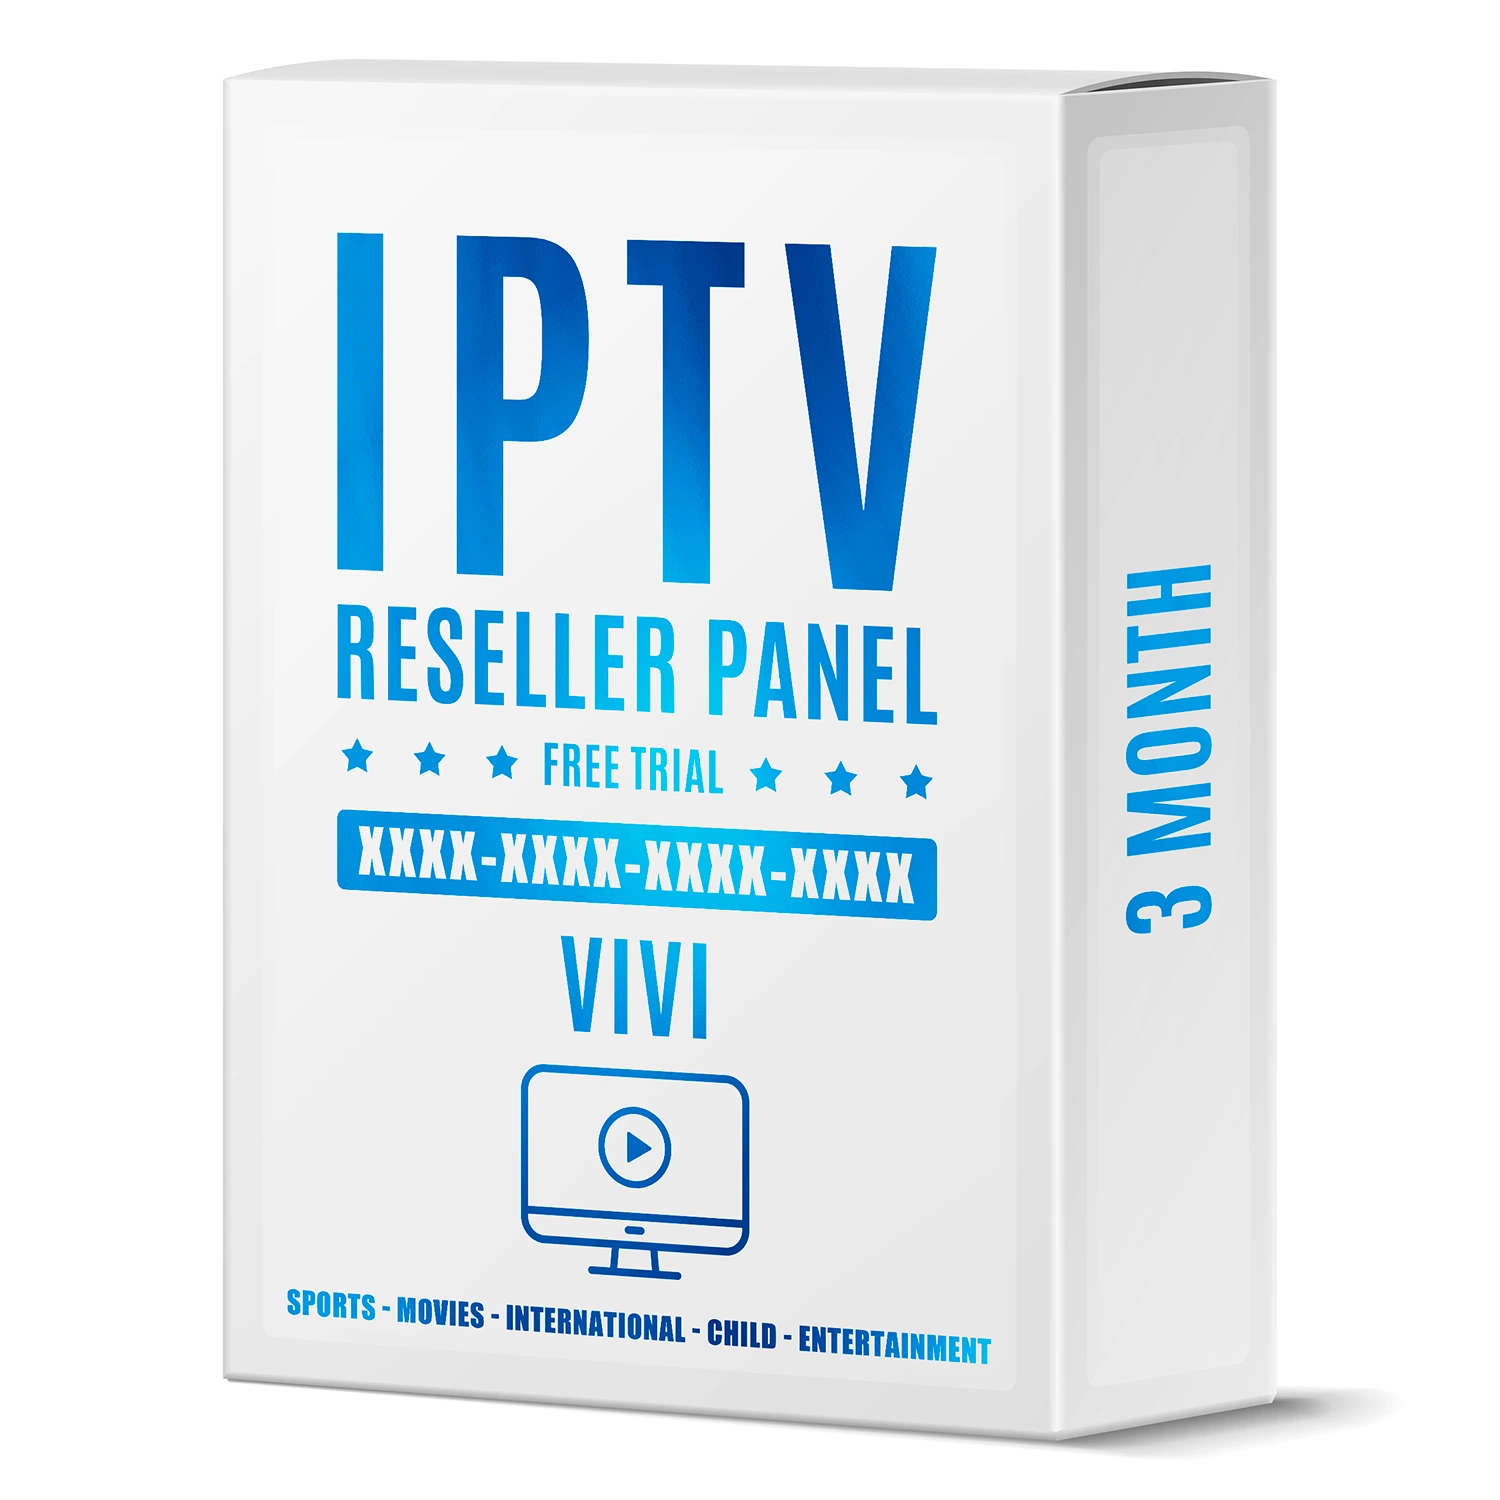 3 meses de 2022 Lista Mundo IPTV Prueba gratuita de código de Android Tvbox Decodificador Vivi Panel Reseller Firestick 4K M3U Suscripción IPTV